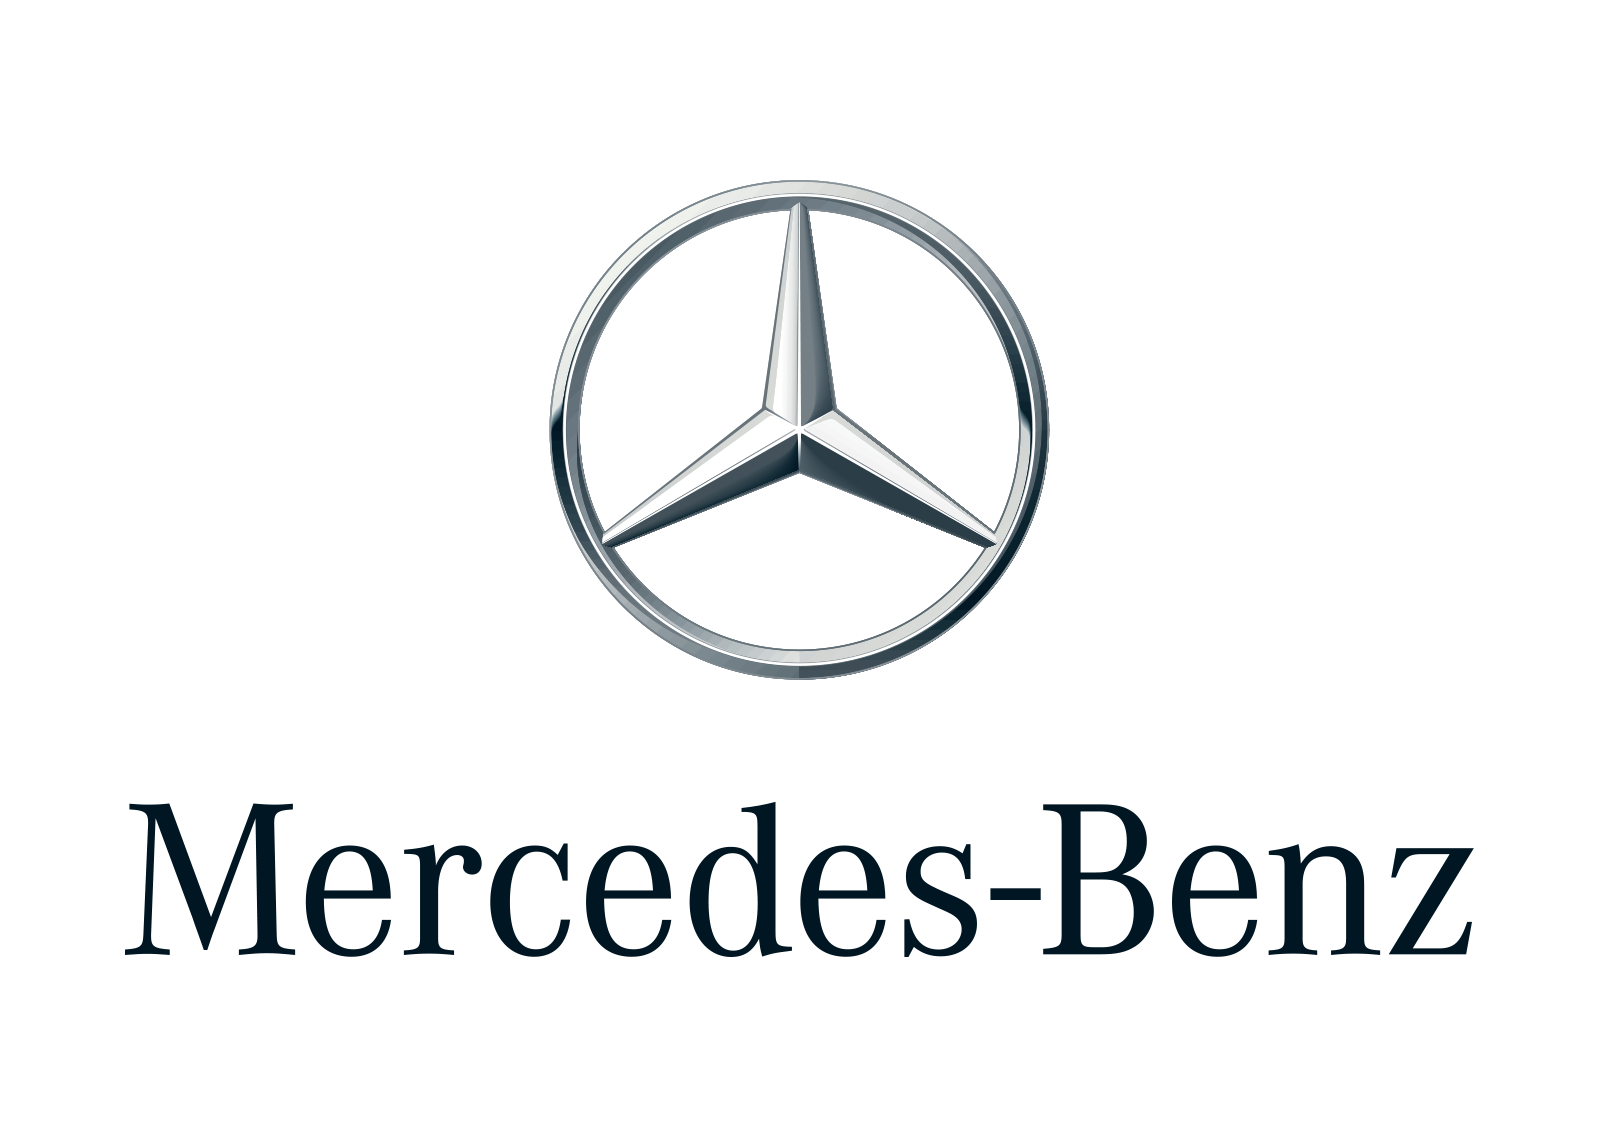 kisspng-mercedes-benz-c-class-car-luxury-vehicle-daimler-a-mercedes-benz-5ac0a4dea8d893.8703841915225745586916